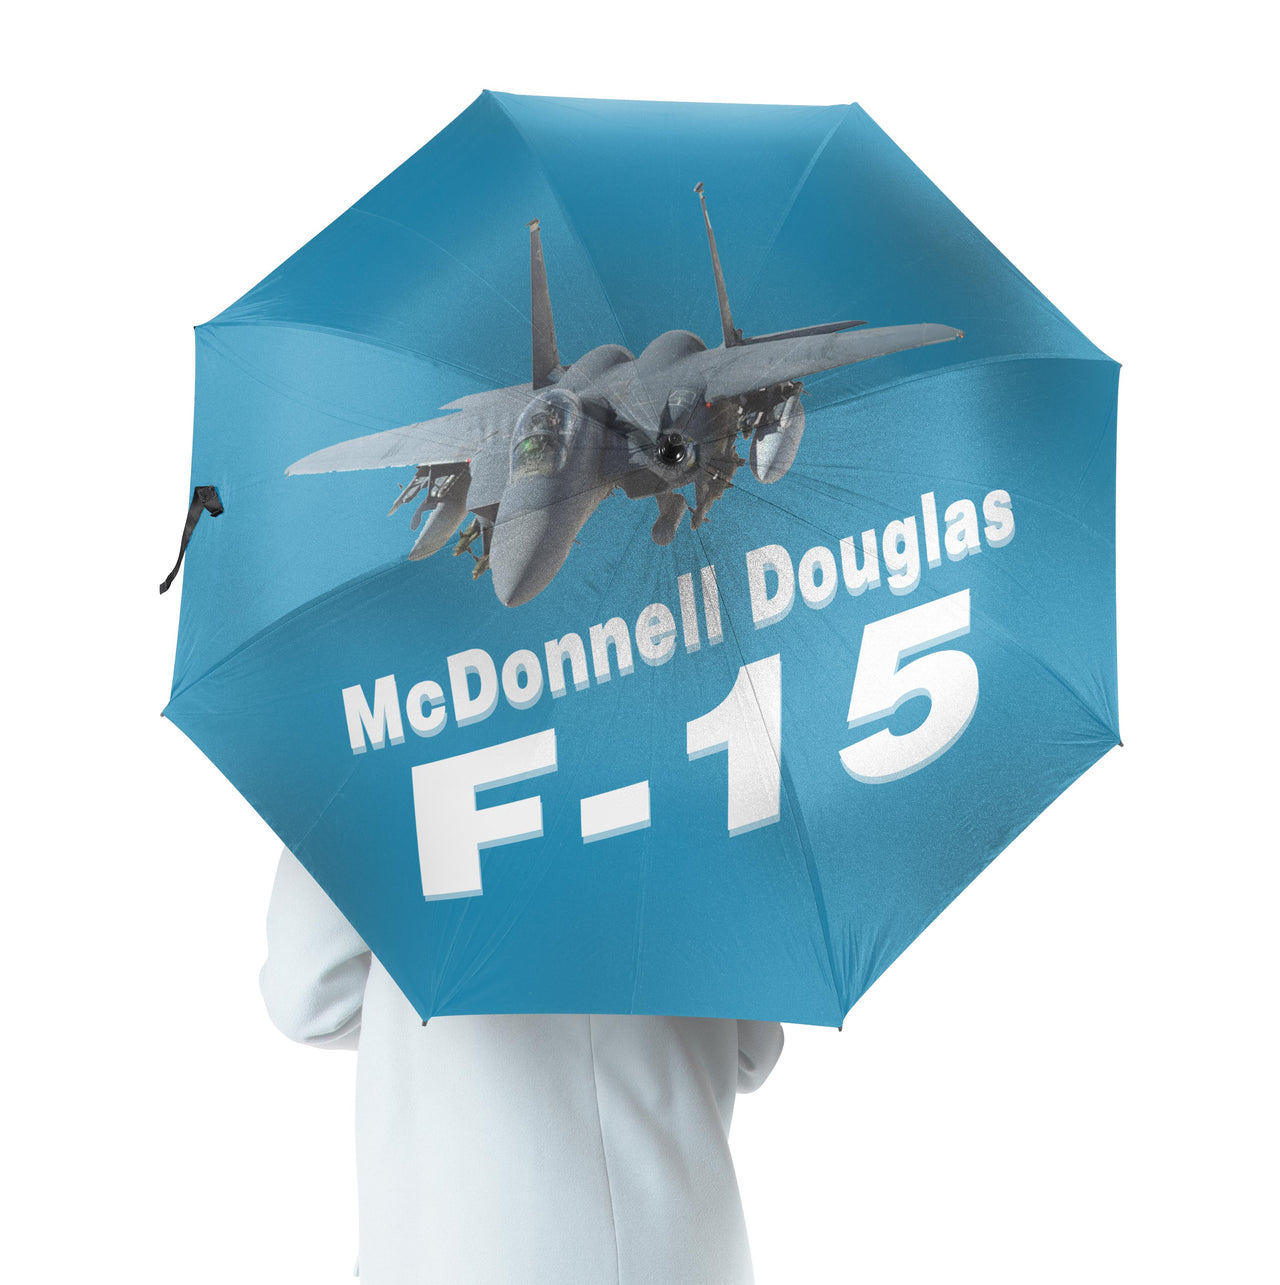 The McDonnell Douglas F15 Designed Umbrella